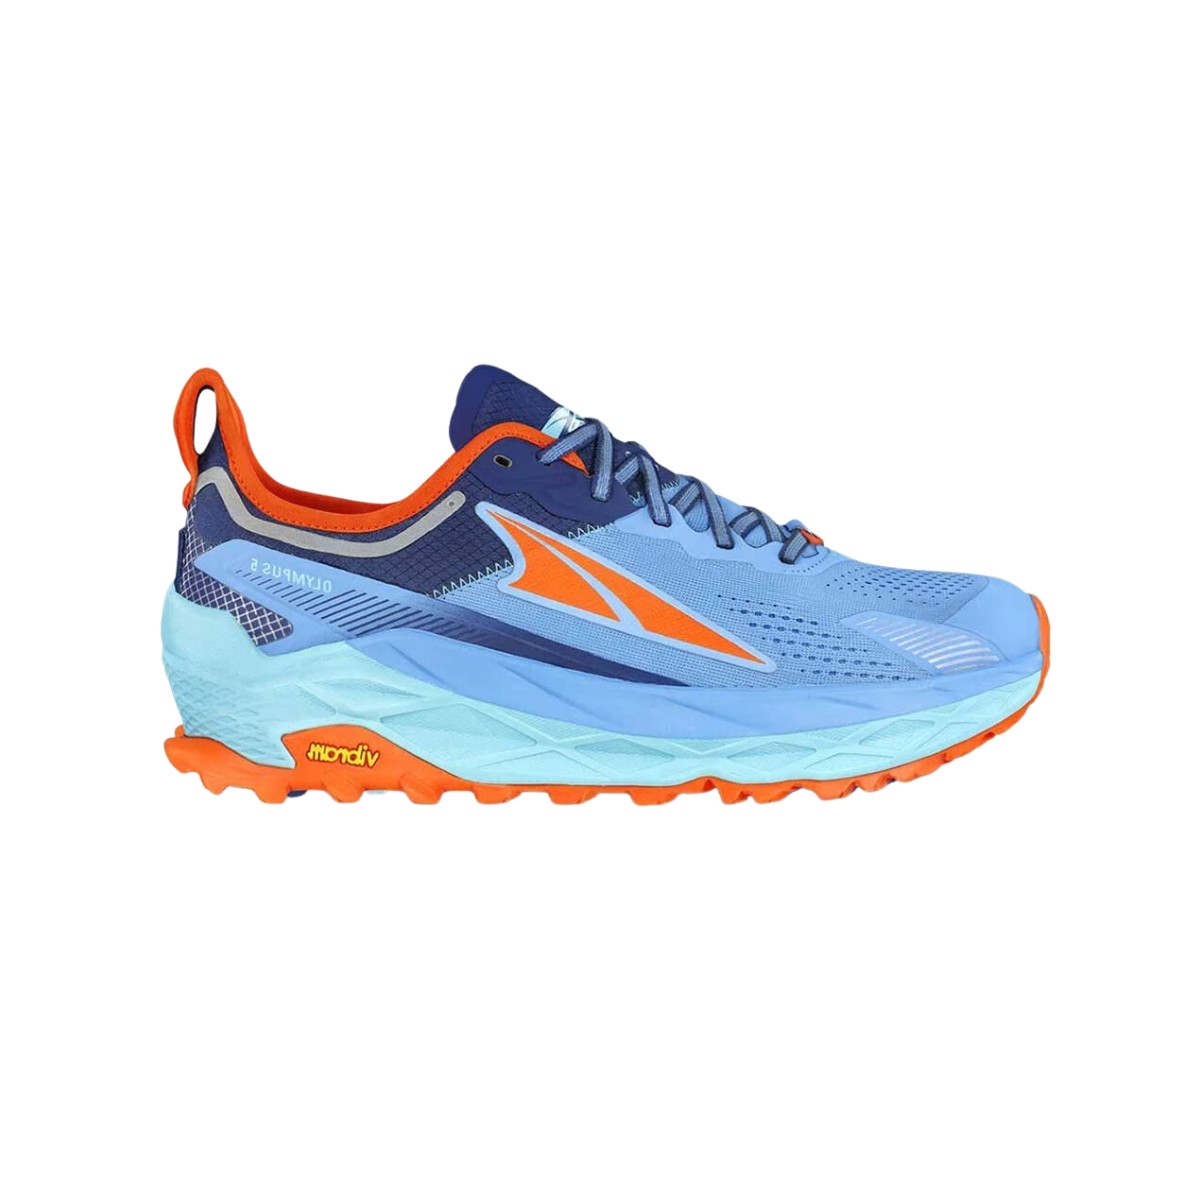 Schuhe günstig Kaufen-Altra Olympus 5 Schuhe Blau Orange AW23, Größe 42,5 - EUR. Altra Olympus 5 Schuhe Blau Orange AW23, Größe 42,5 - EUR <![CDATA[Eigenschaften Altra Olympus 5 Trail-Schuhe
 Die Altra Olympus 5-Schuhe sind ein Trailrunning-Modell, bei dem 